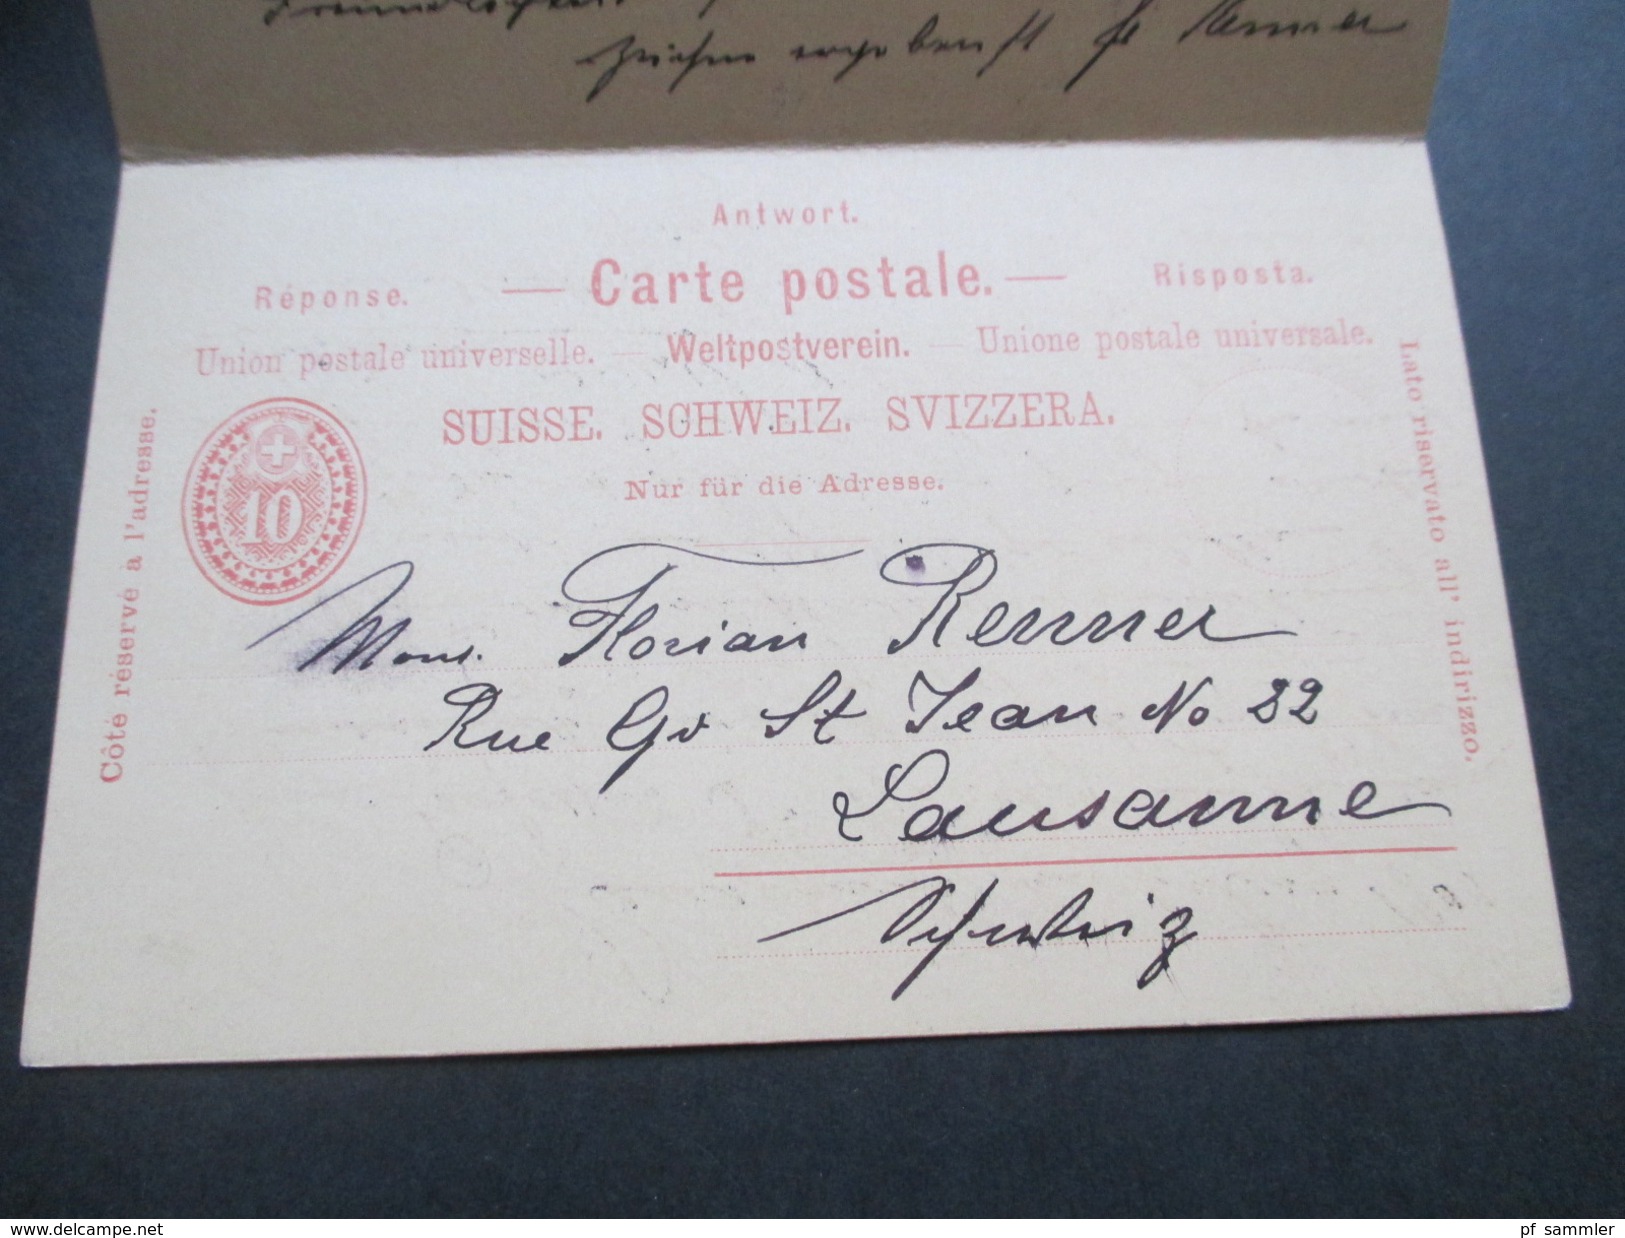 Schweiz Ganzsache P29 Frage / Antwort 1898 Lausanne - Karlsbad. Strichstempel. Mit handschriftlichem Vermerk